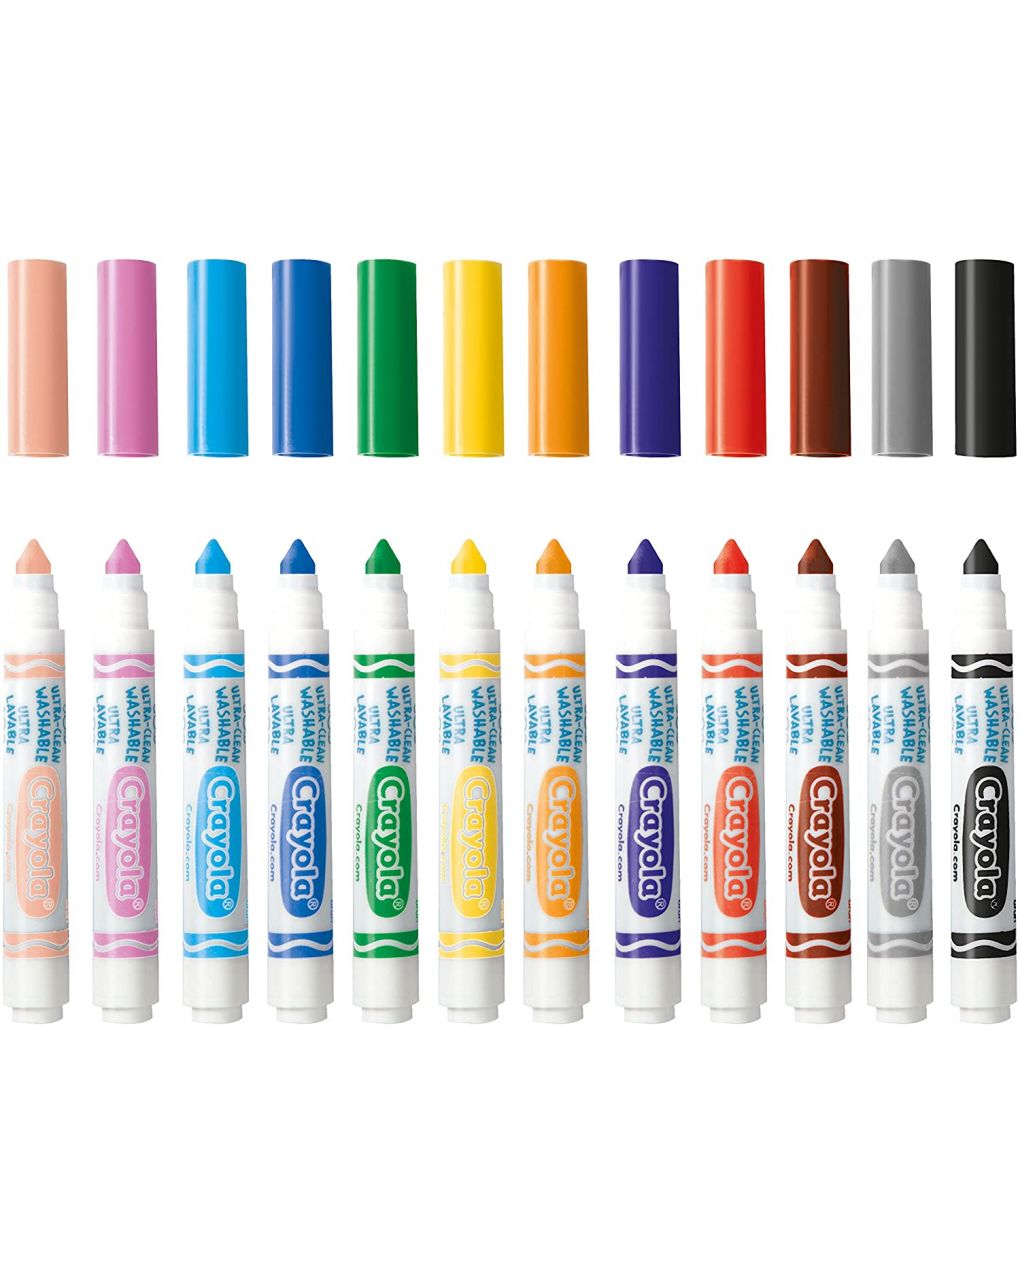 Crayola - 12 cores de maxi fibra ultra-laváveis - Crayola